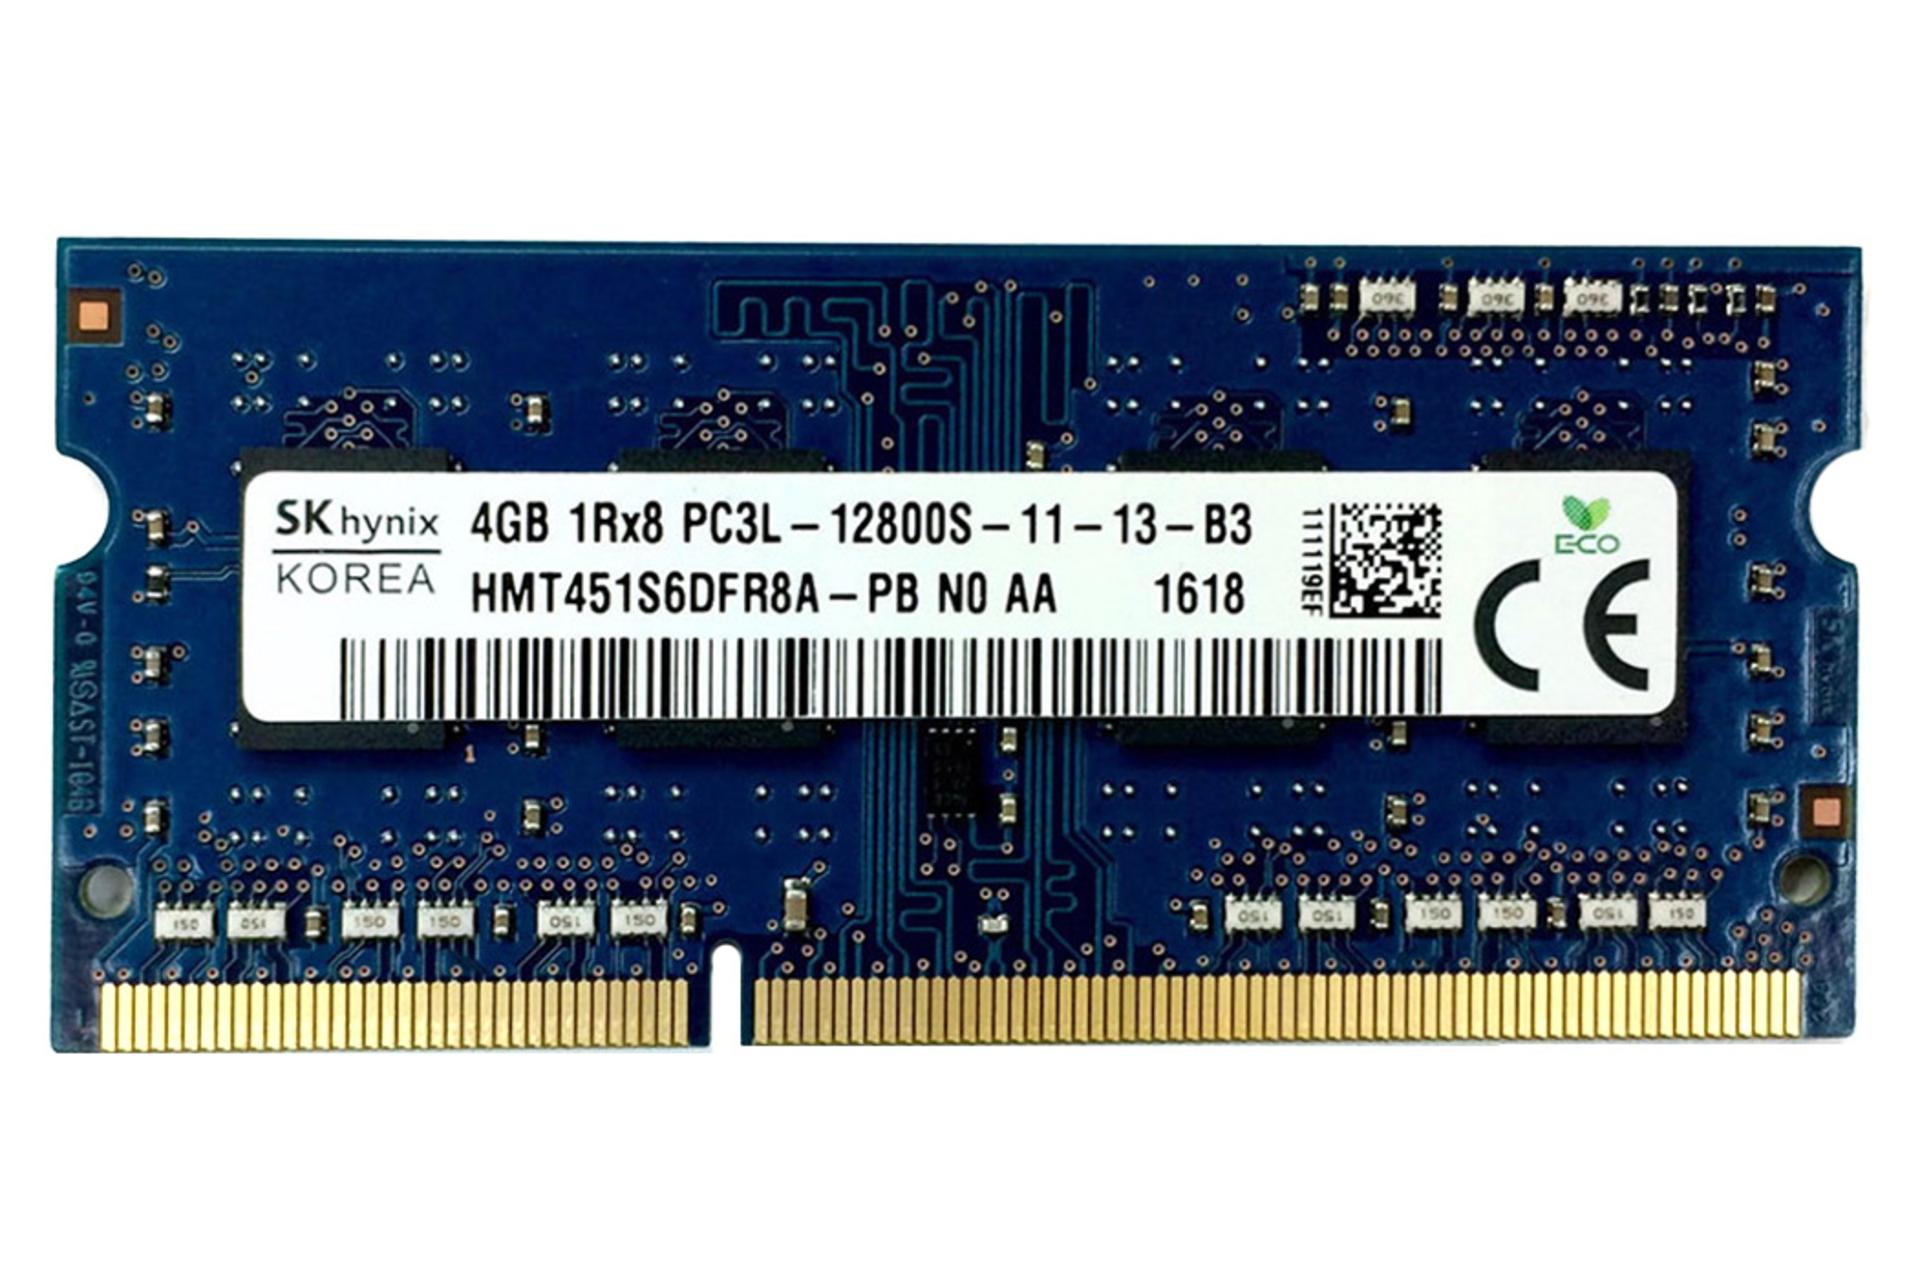 رم اس کی هاینیکس SK Hynix HMT451S6DFR8A-PB 4GB DDR3L-1600 CL11